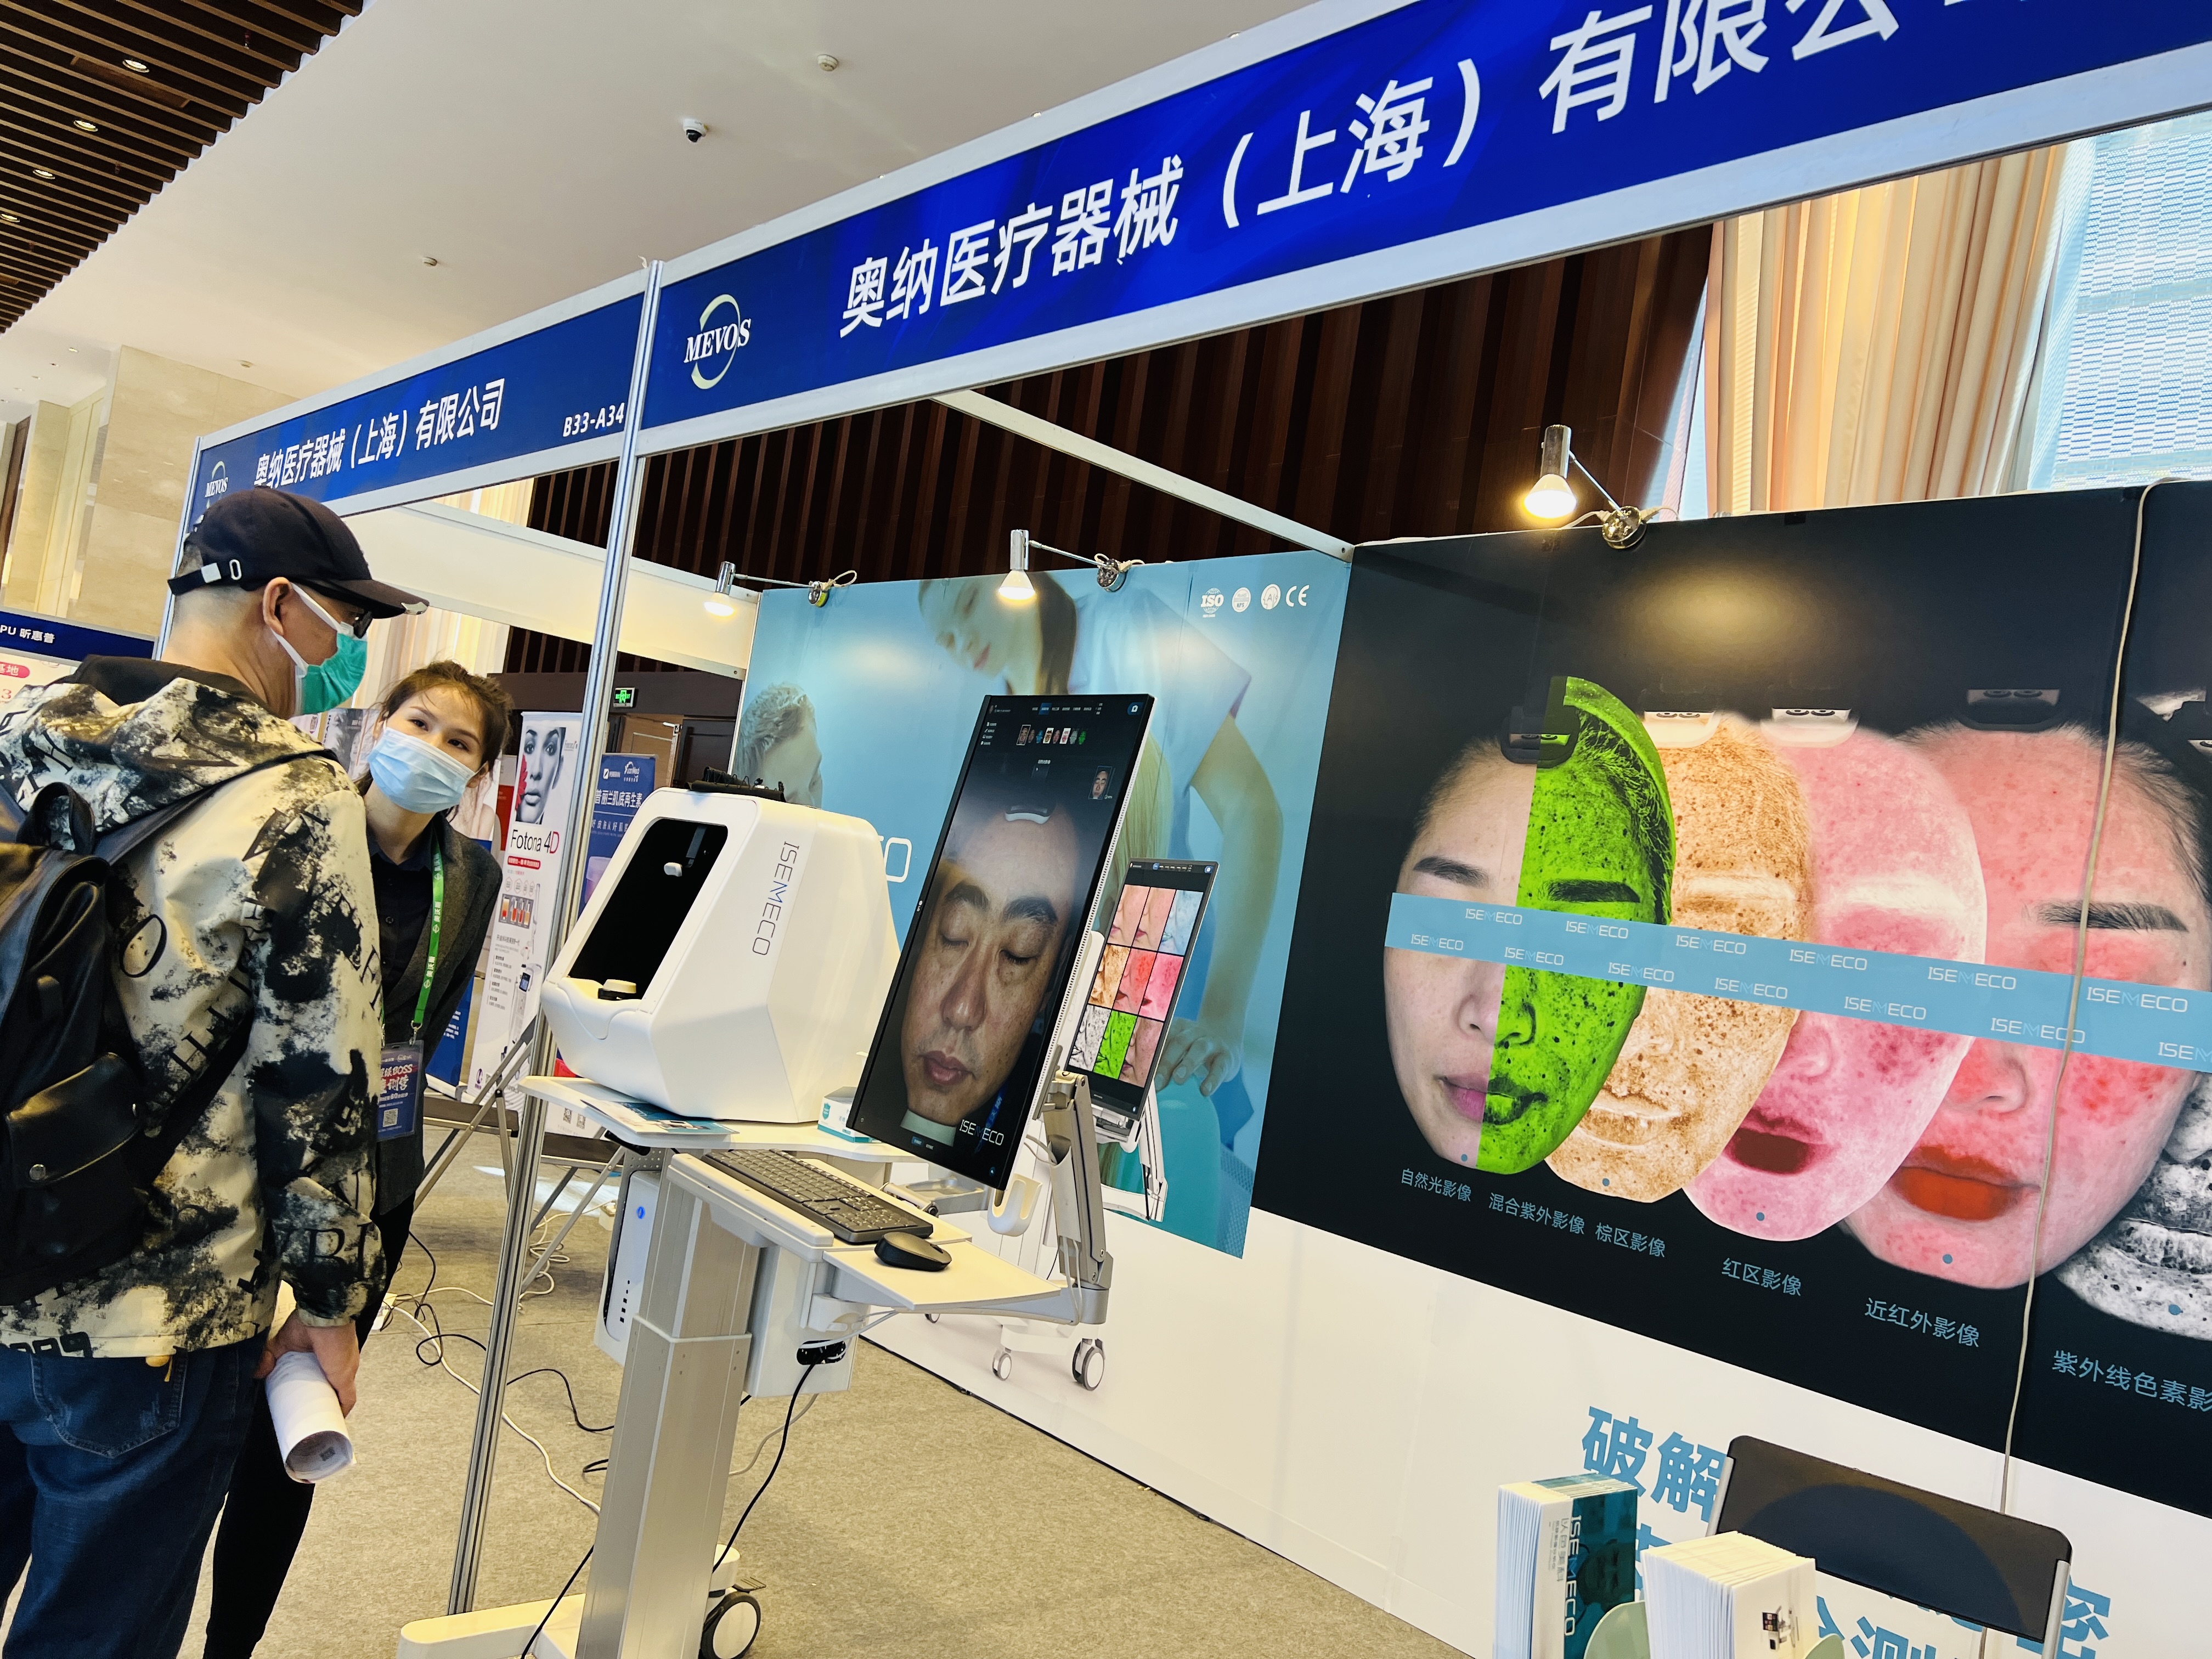 Pokazy wysokiej klasy analizatorów skóry ISEMECO na wystawie MEVOS w Kantonie